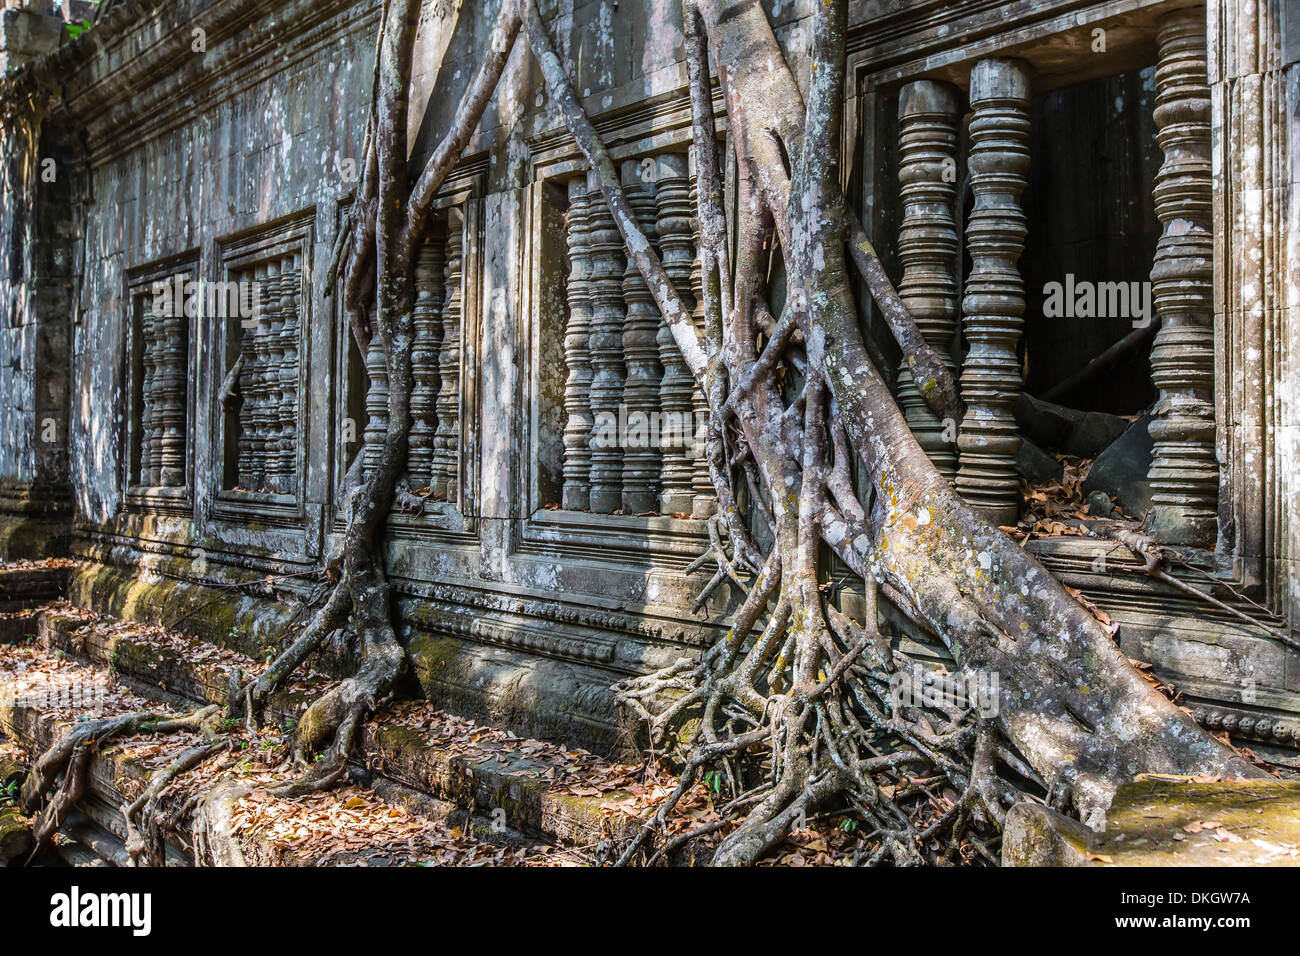 Beng Mealea templo, cubierto y cayendo, Angkor, sitio del Patrimonio Mundial de la UNESCO, de la provincia de Siem Reap, Camboya, en el sudeste de Asia Foto de stock